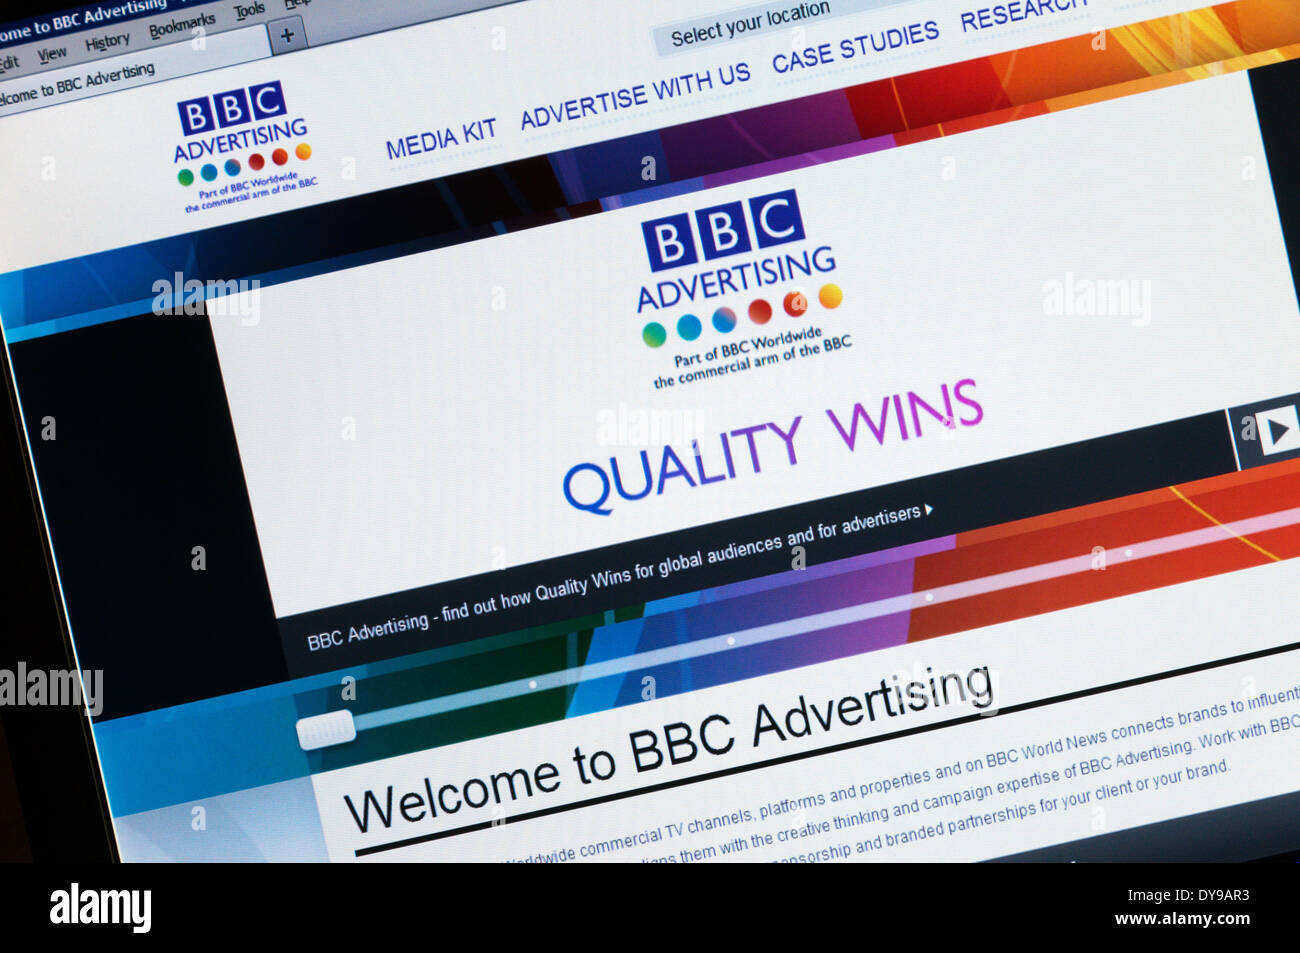 Le site de la BBC La publicité d'une partie de la BBC, BBC Worldwide, soirées d'entreprises commerciales. Banque D'Images